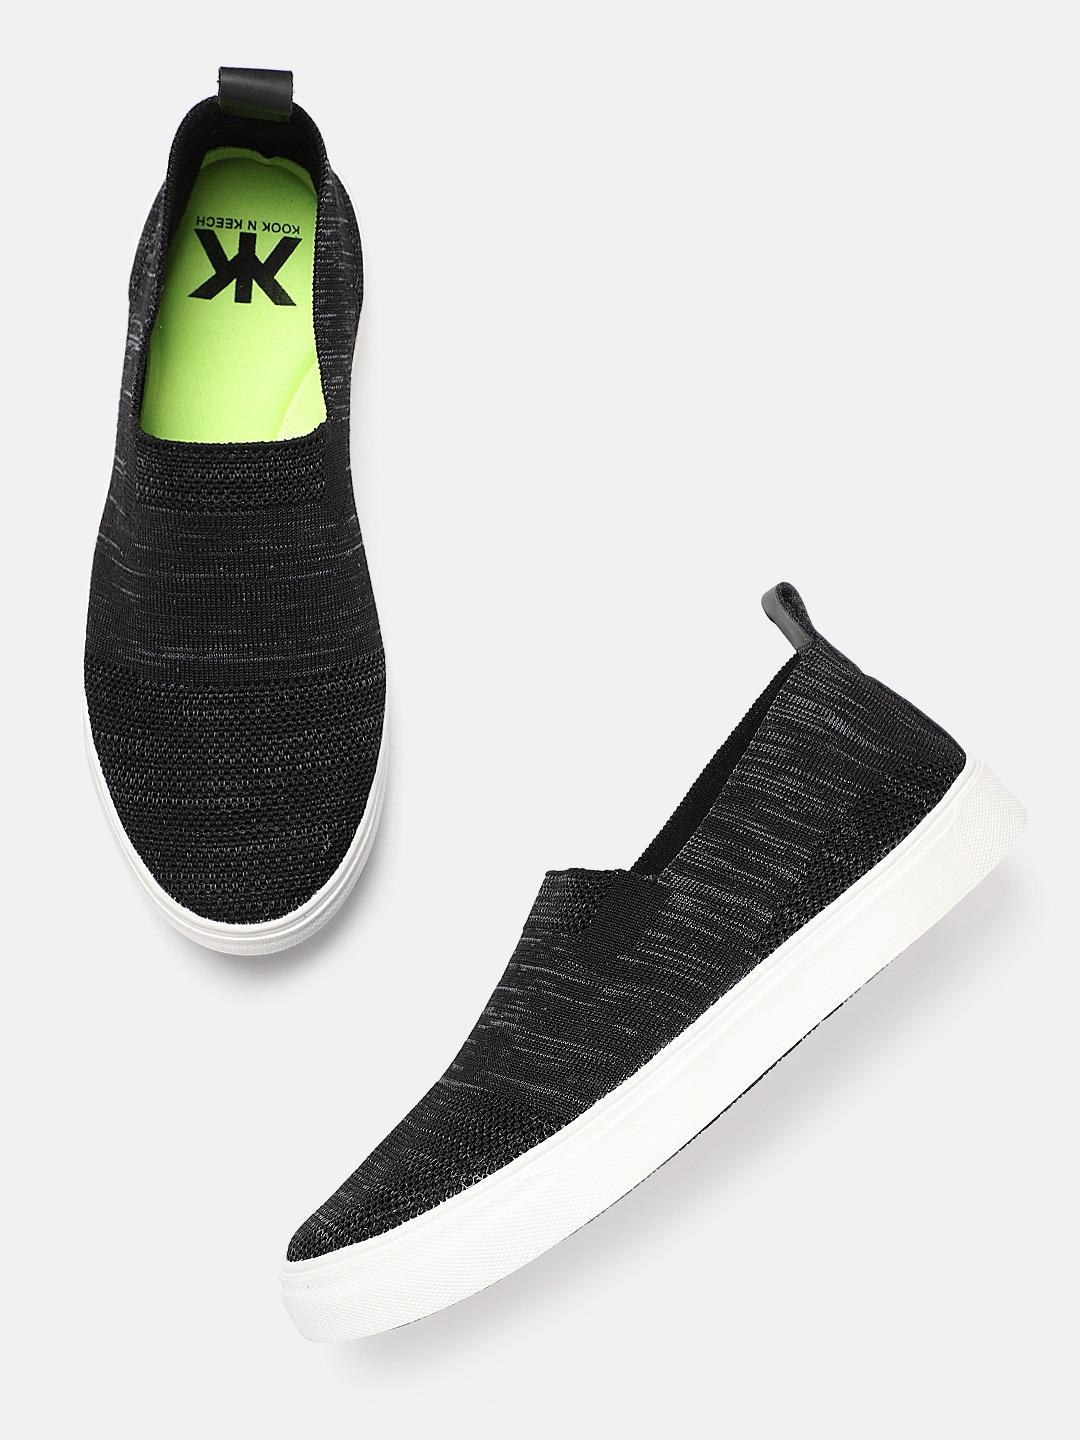 kook n keech men black & grey woven design slip-on sneakers